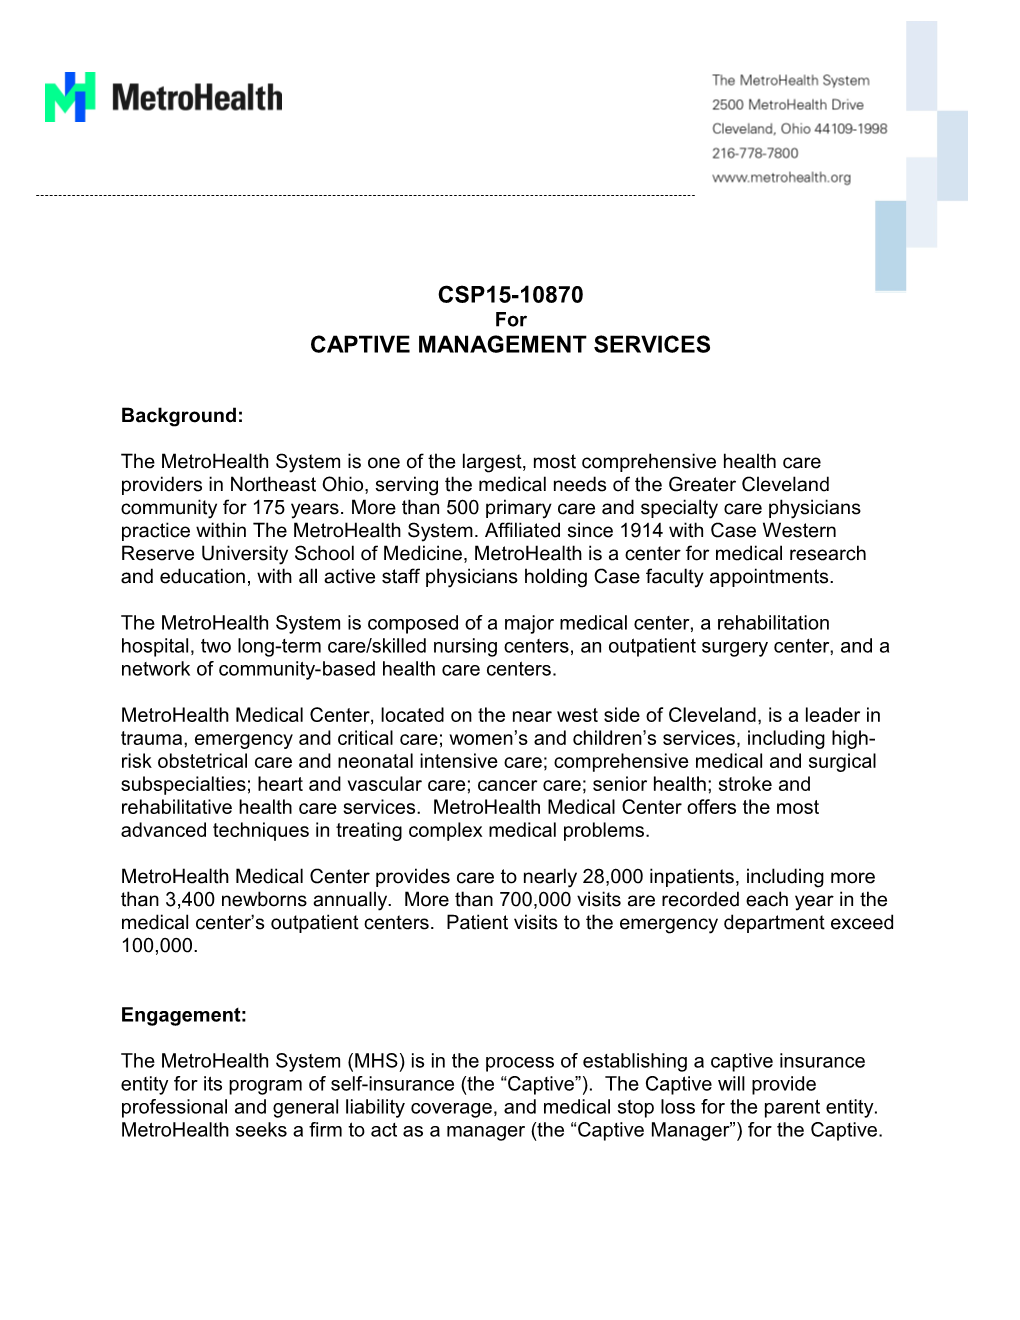 Captive Management Services